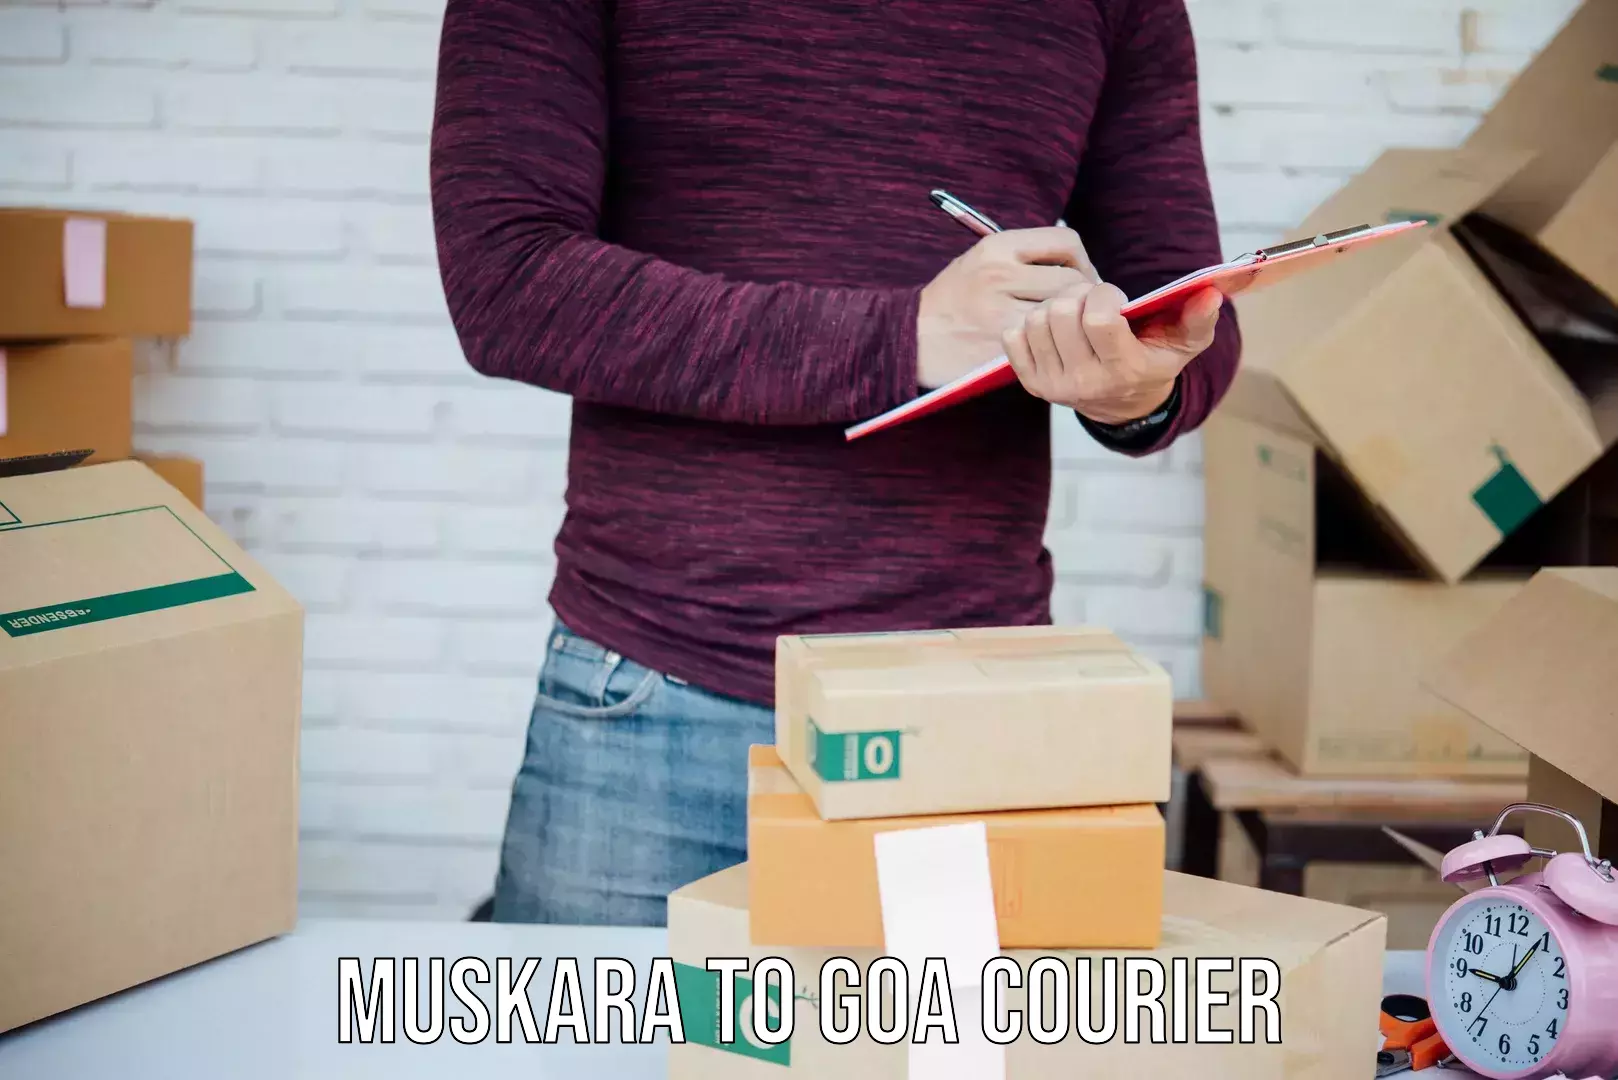 Courier service innovation Muskara to Panaji